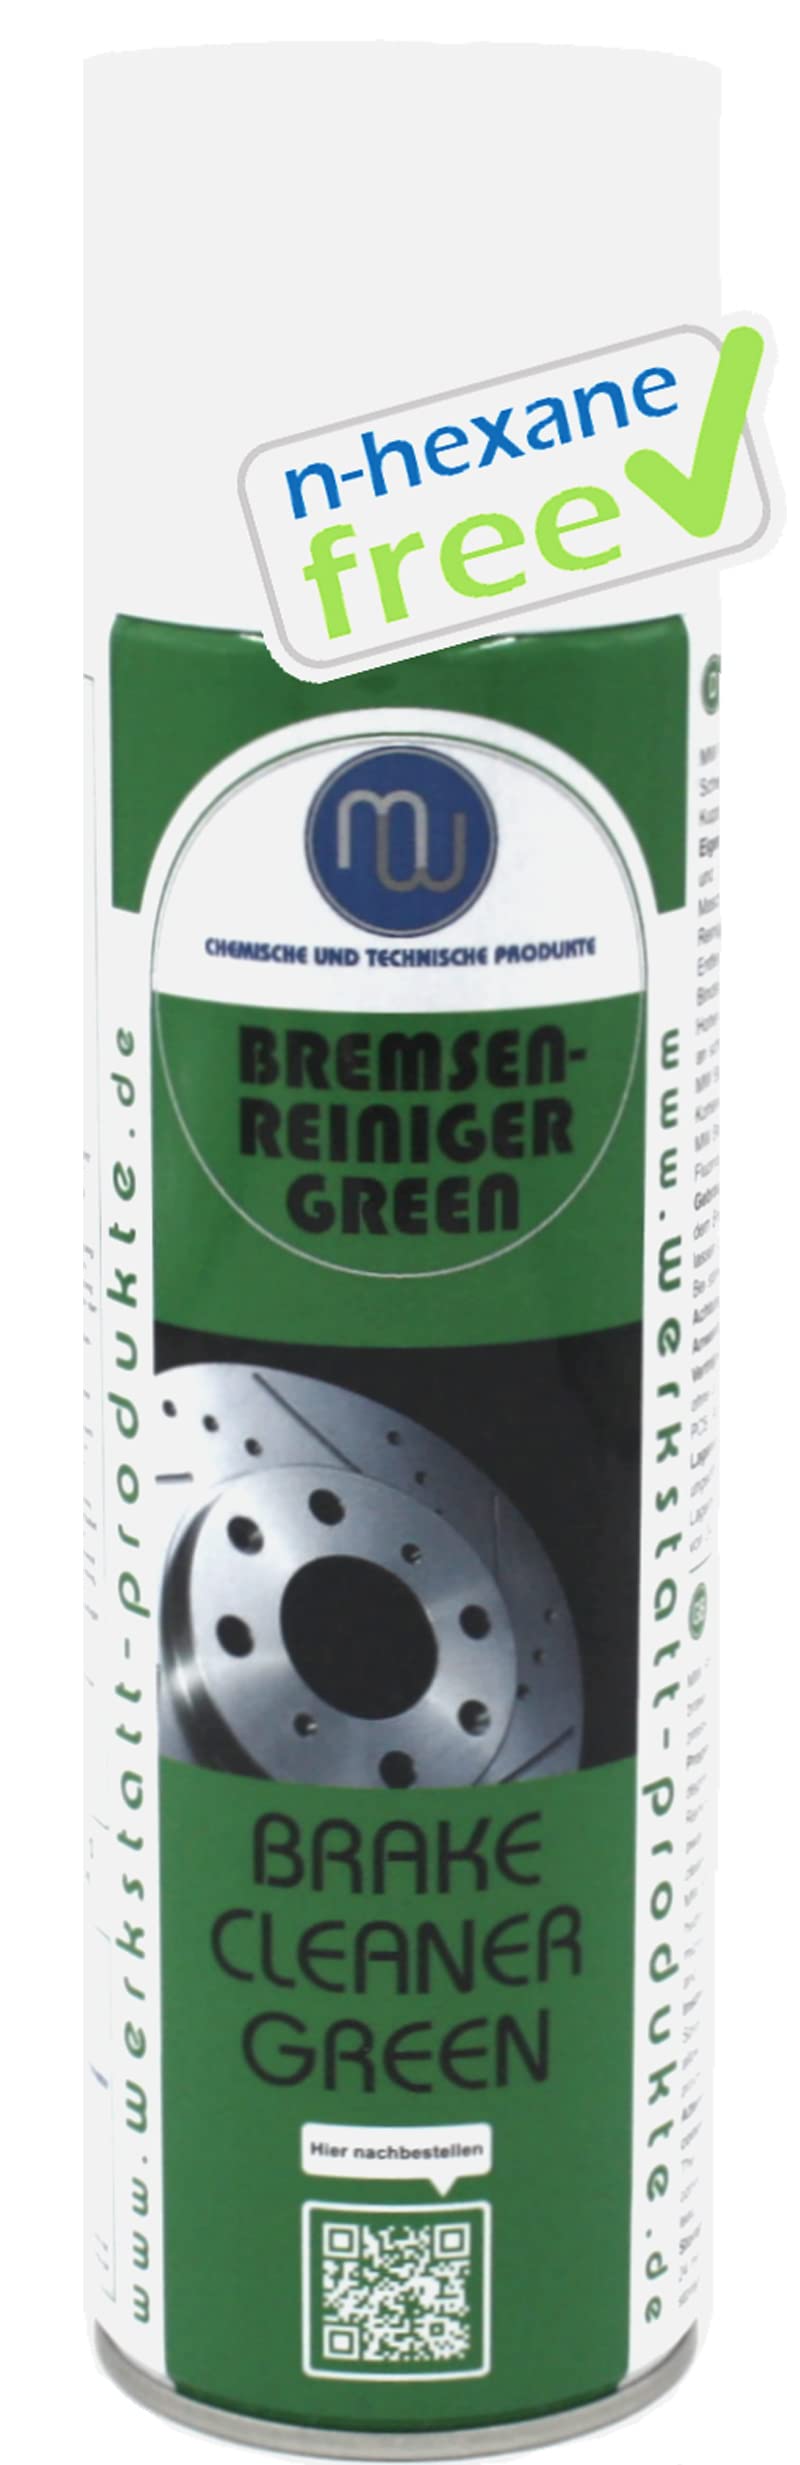 MW Bremsenreiniger Green 500ml n-hexane frei von MW